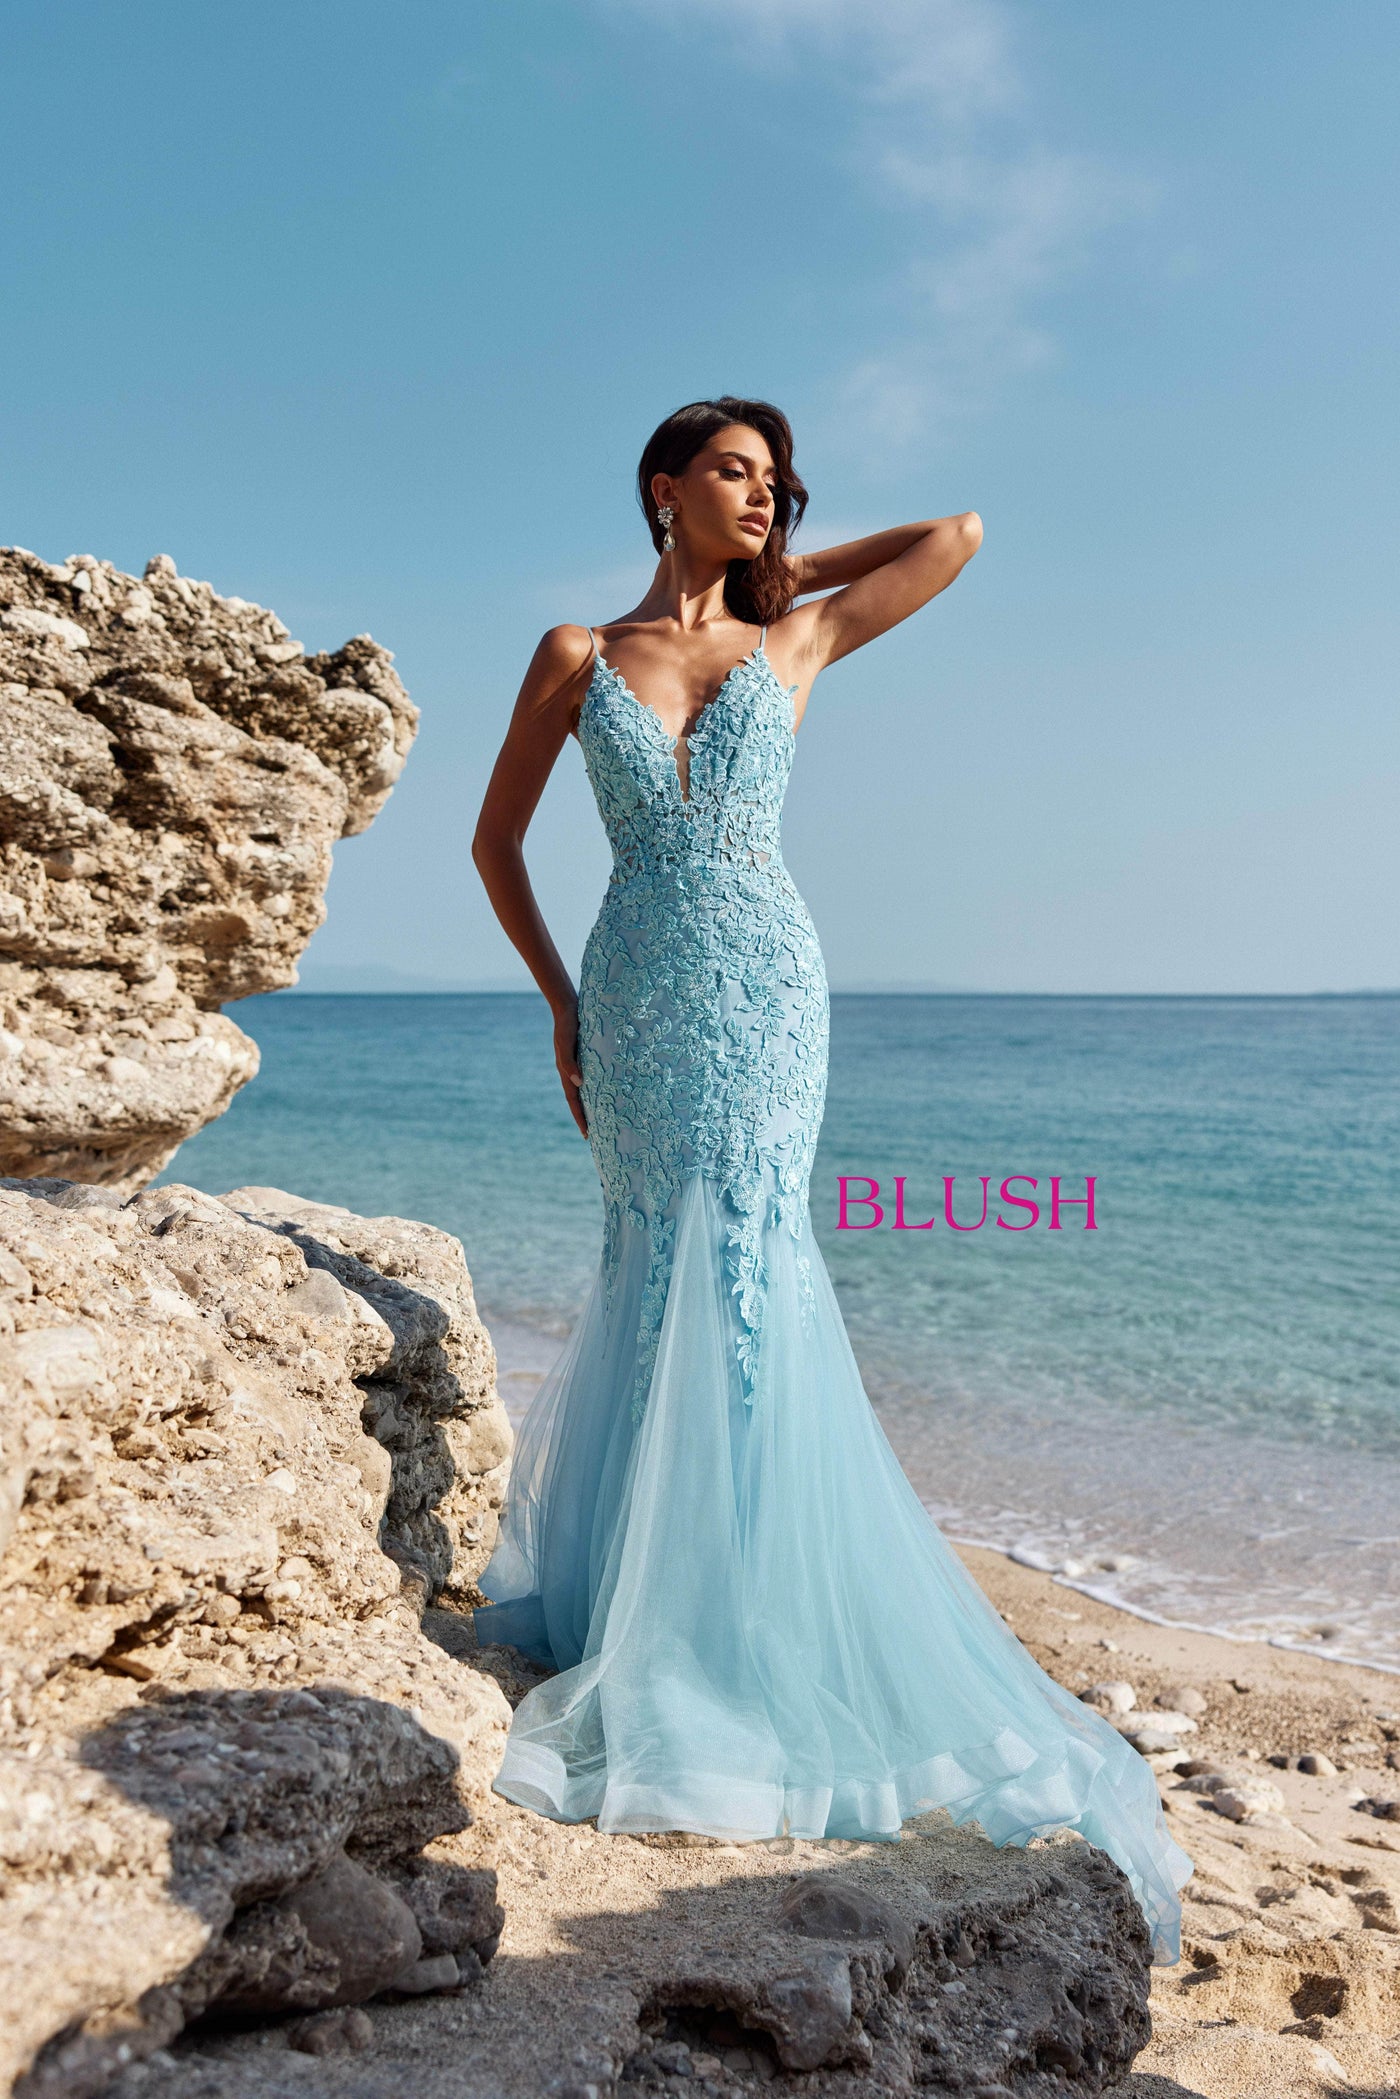 Blush by Alexia Designs 12130 - Applique V-Neck Prom DressSpecial Occasion Dress